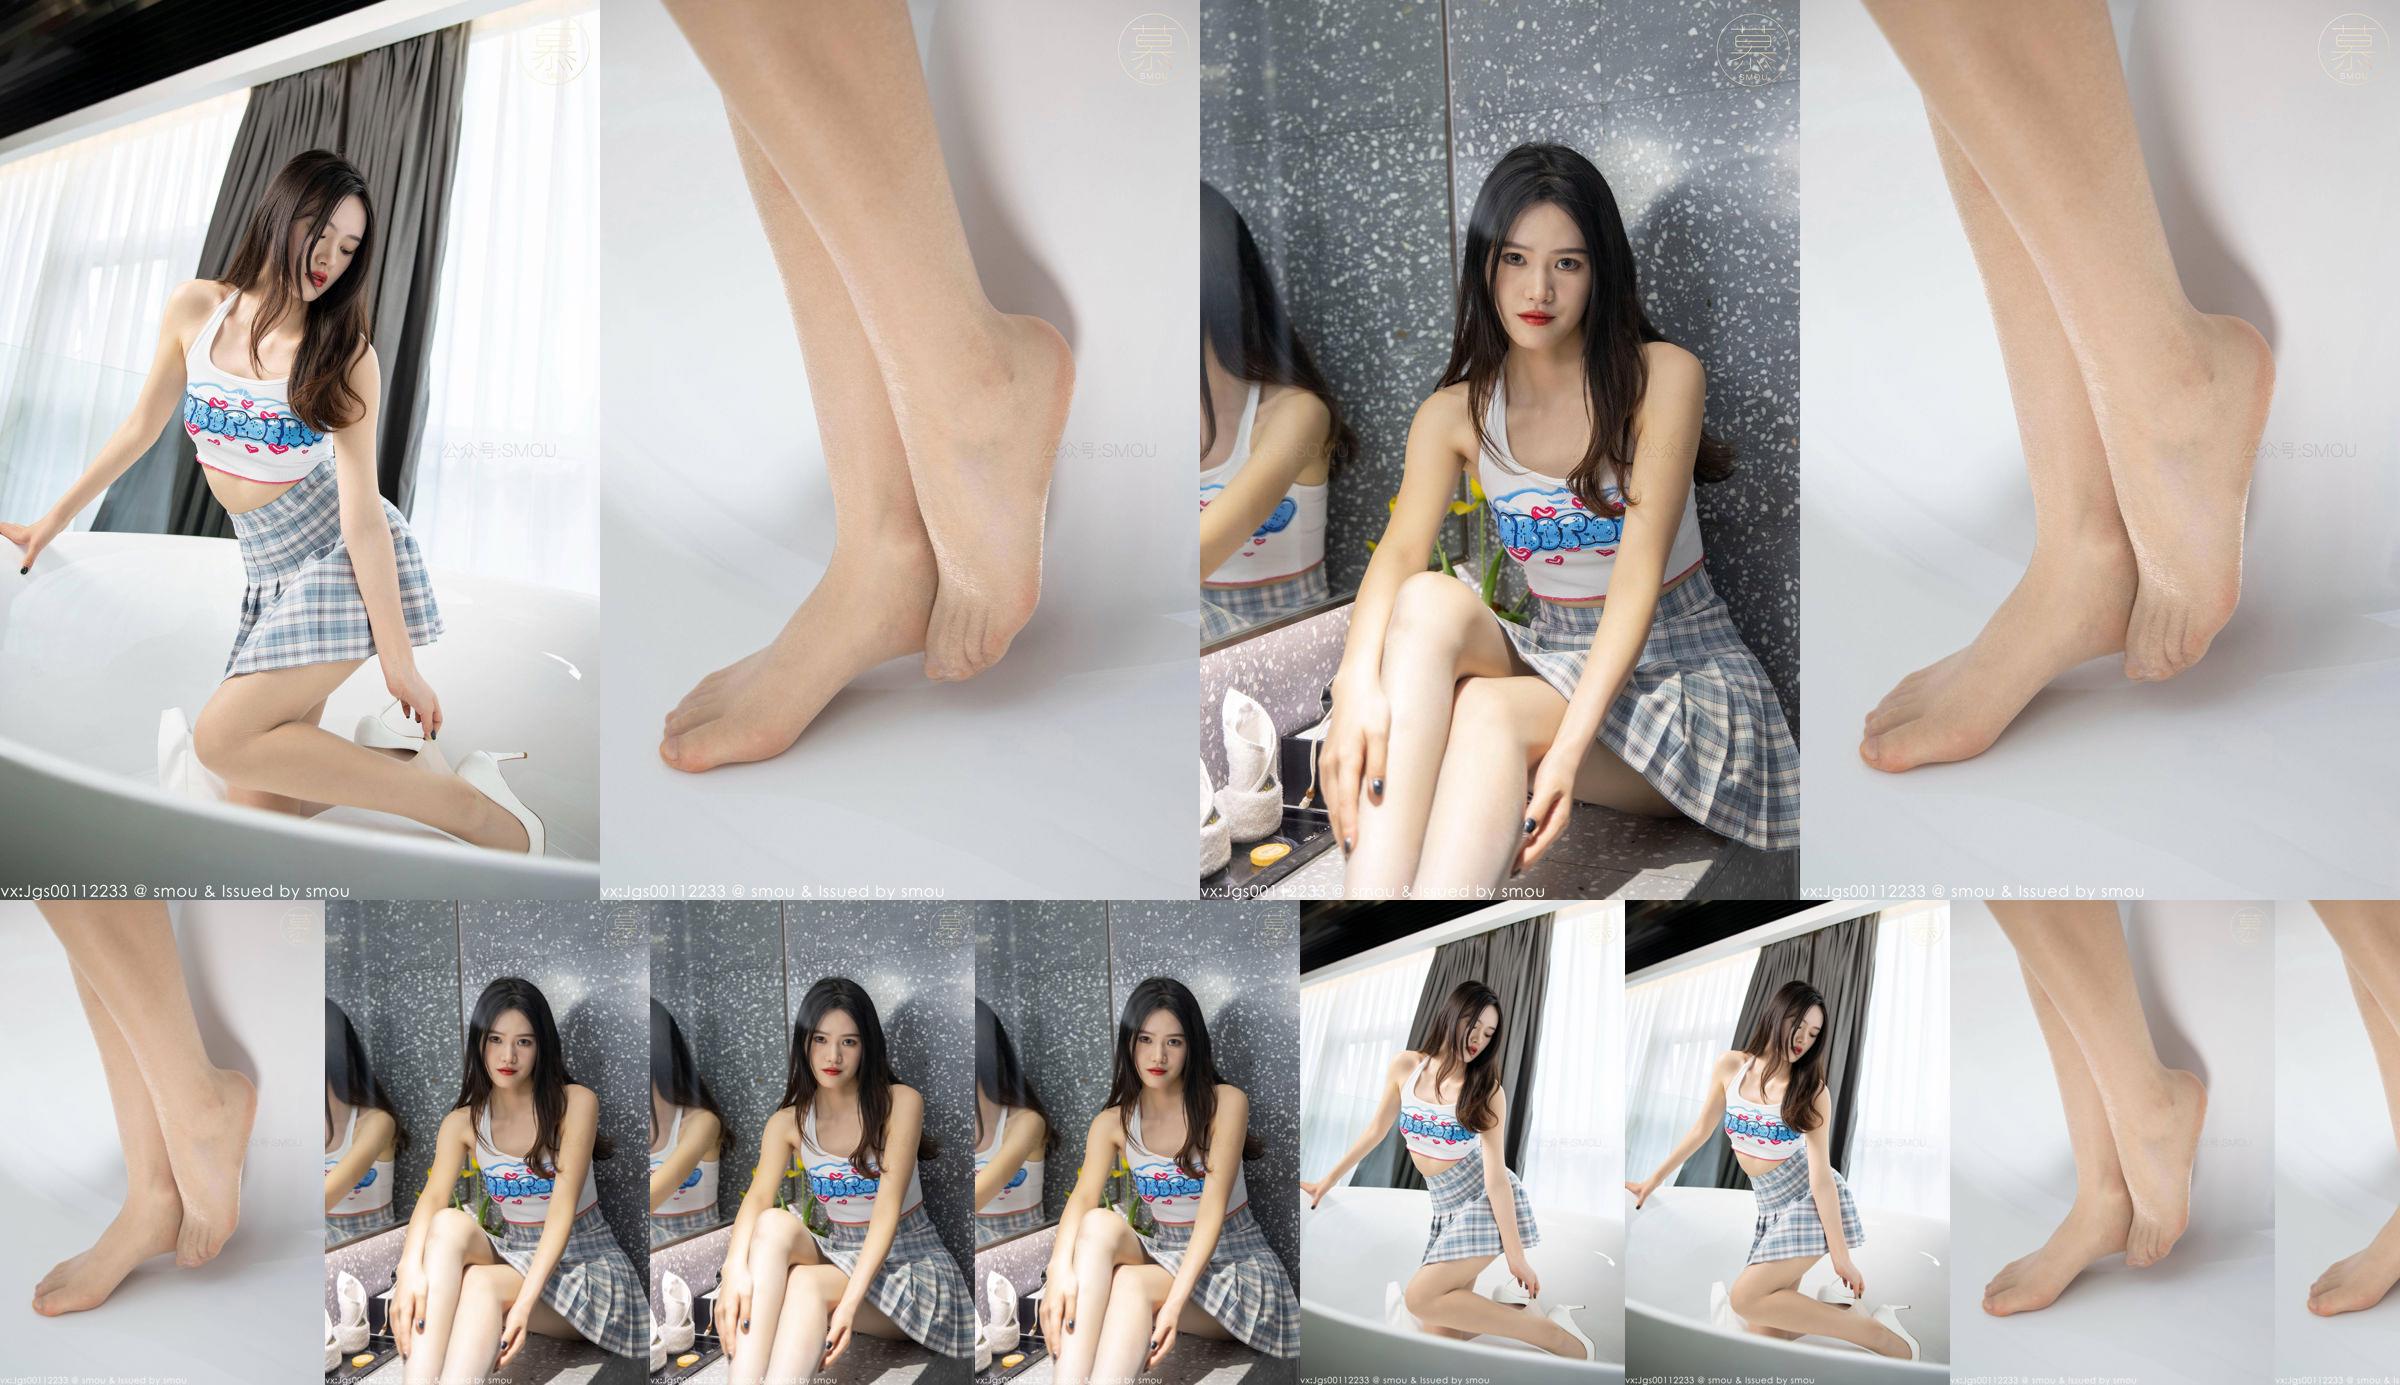 [SMOU] Honey Series M014 nouveau modèle Weiwei collants belle couverture de jambe No.6536ed Page 6